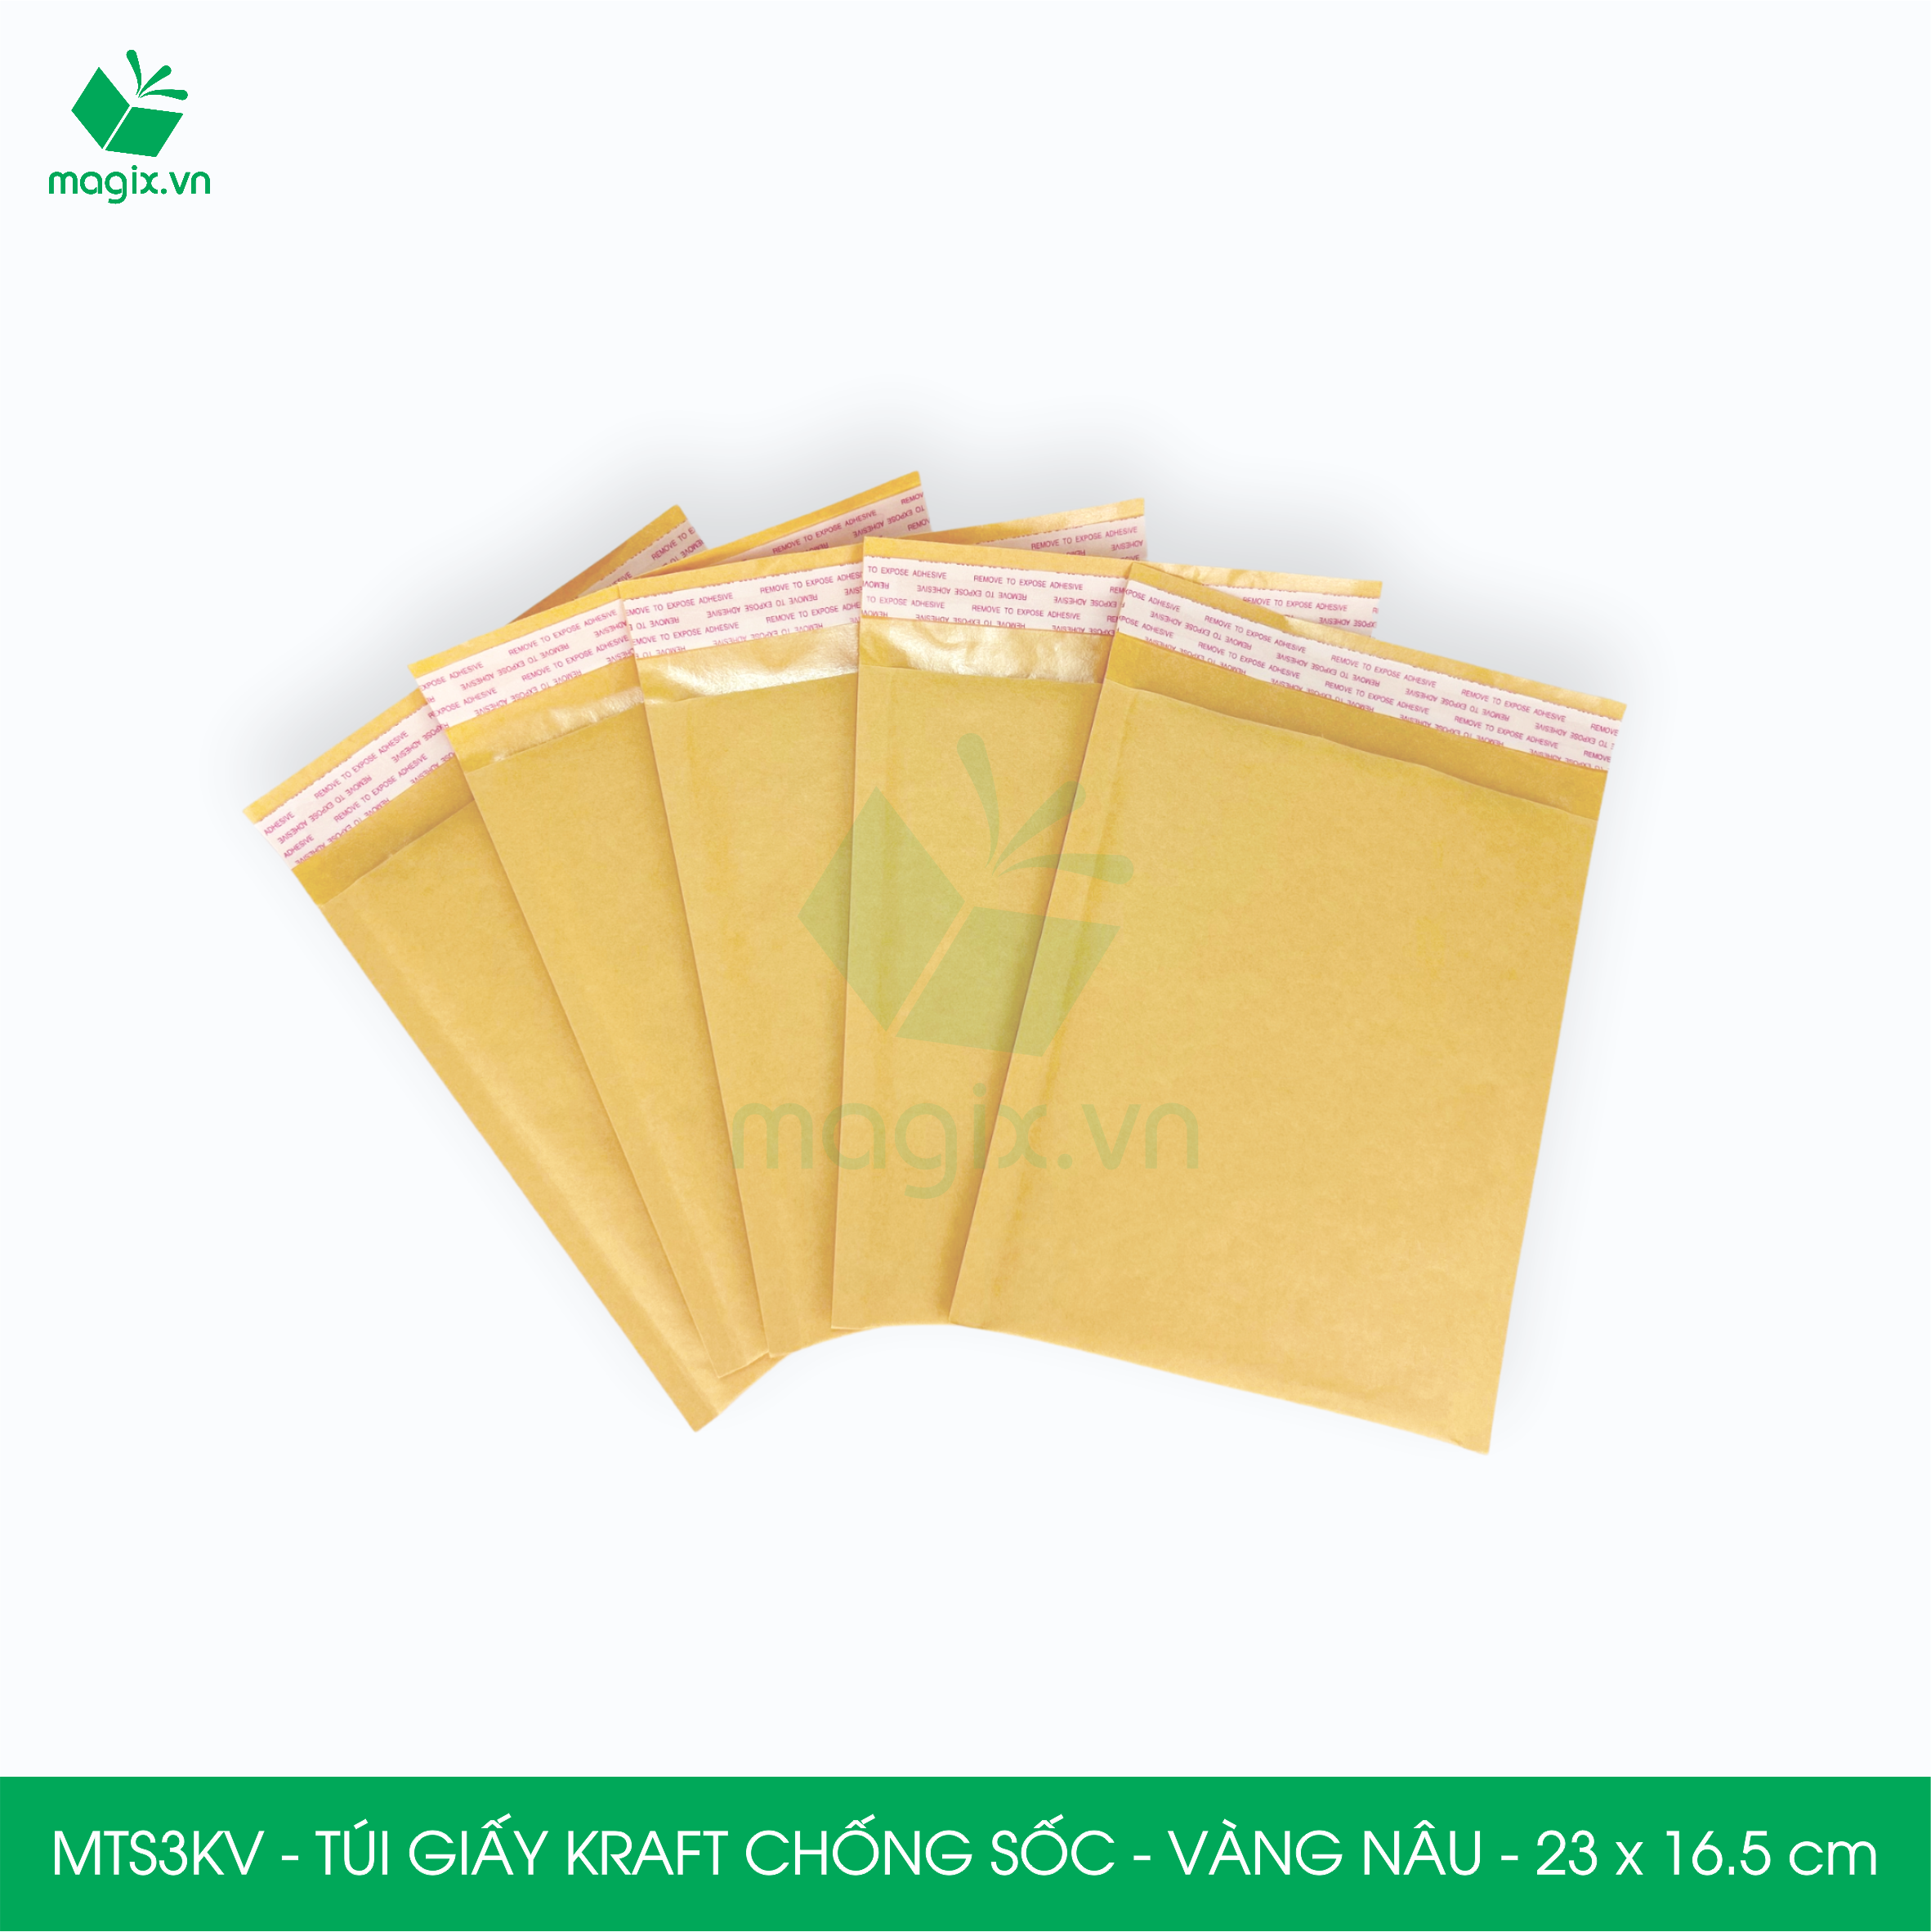 MTS3KV - 23x16.5 cm - 50 túi giấy Kraft bọc bóng khí gói hàng chống sốc màu vàng nâu